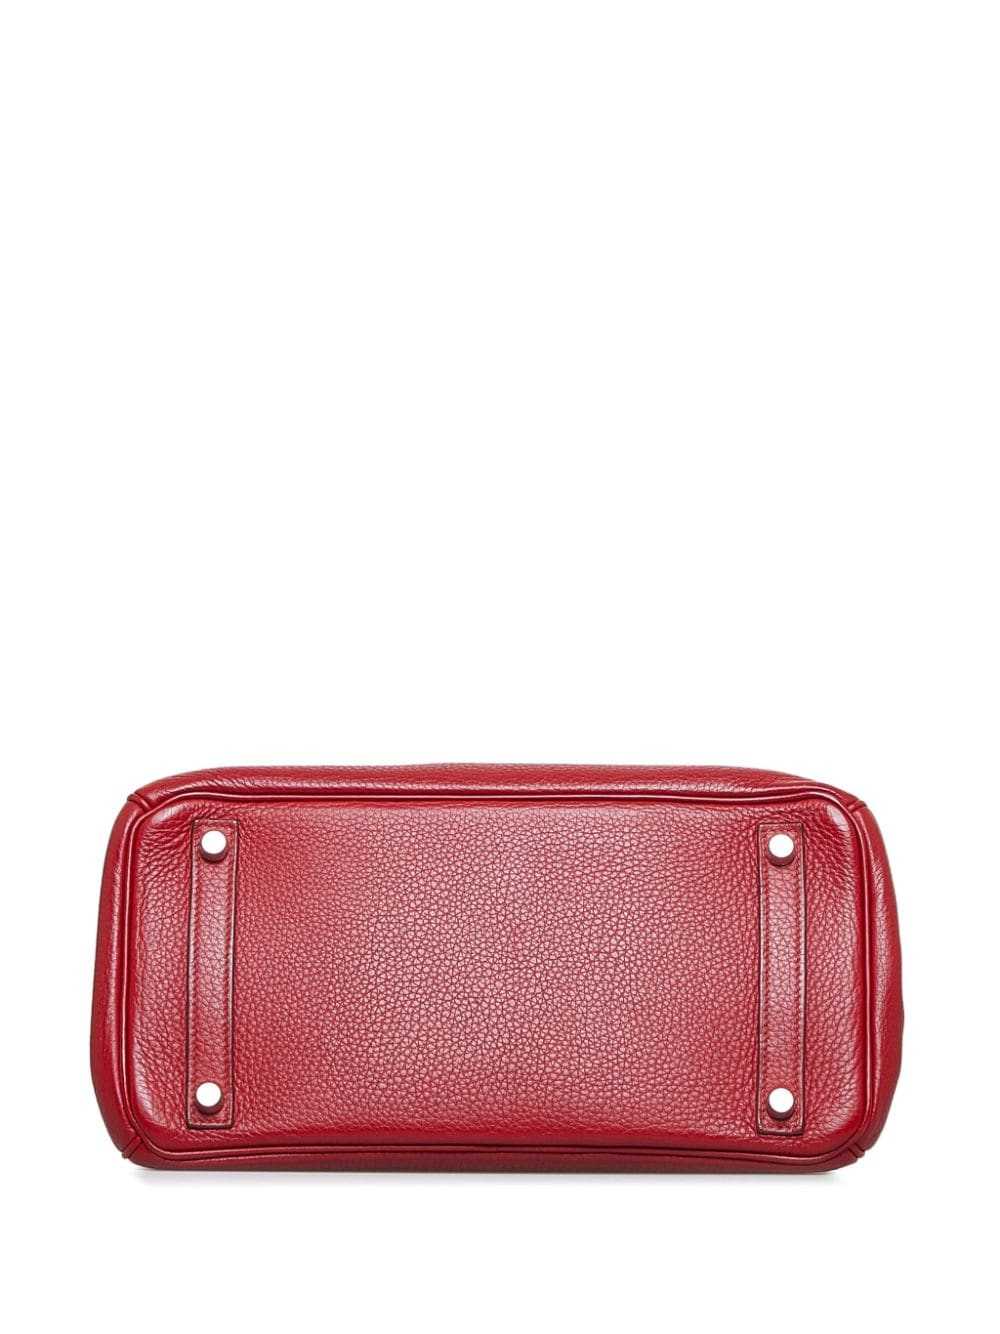 Hermès Pre-Owned pre-owned Birkin 30 handbag - Red - image 4